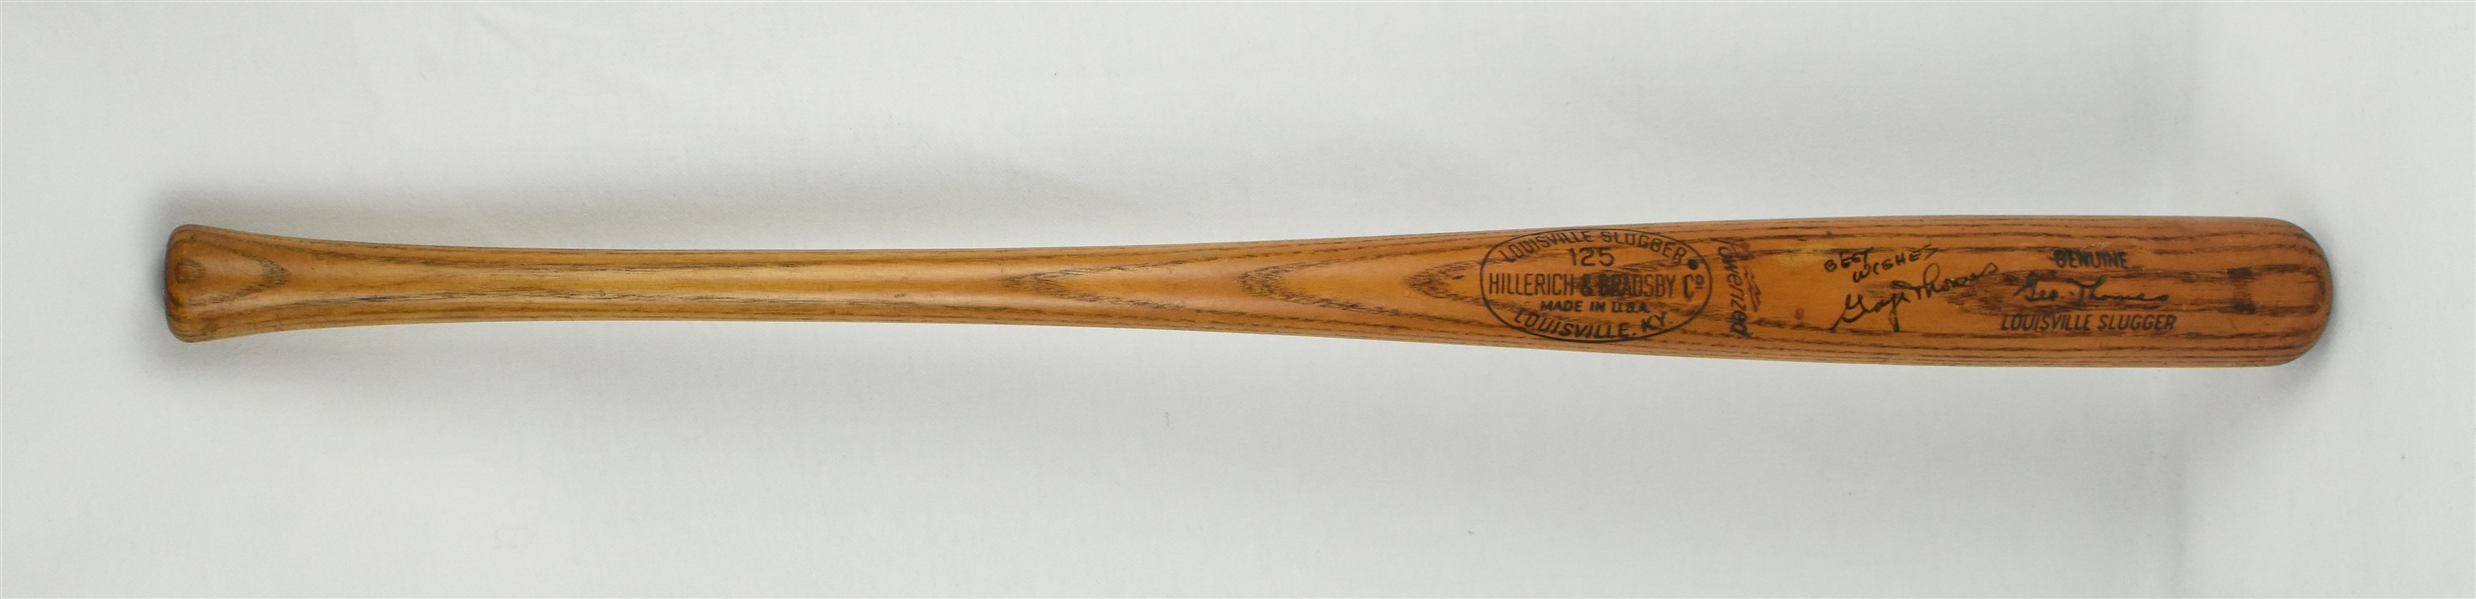 George Thomas Vintage Game Used & Autographed Louisville Slugger Bat